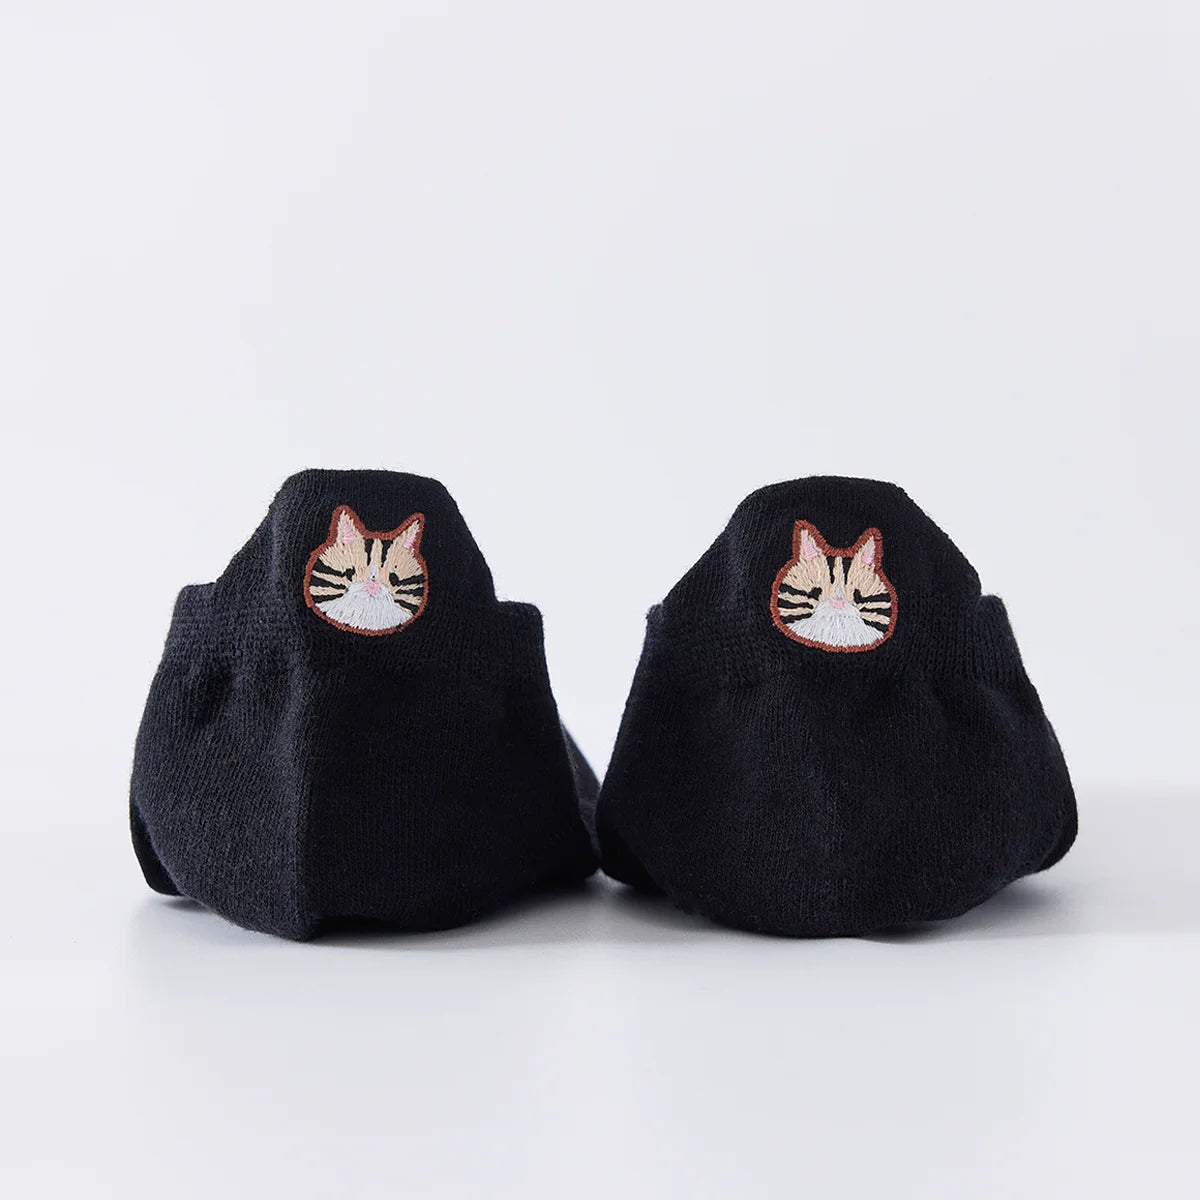 Chaussettes noires en coton à languette chat pour femme | Chaussettes confortables et élégantes | Idéales pour le quotidien ou les occasions spéciales | Disponibles en plusieurs couleurs et tailles